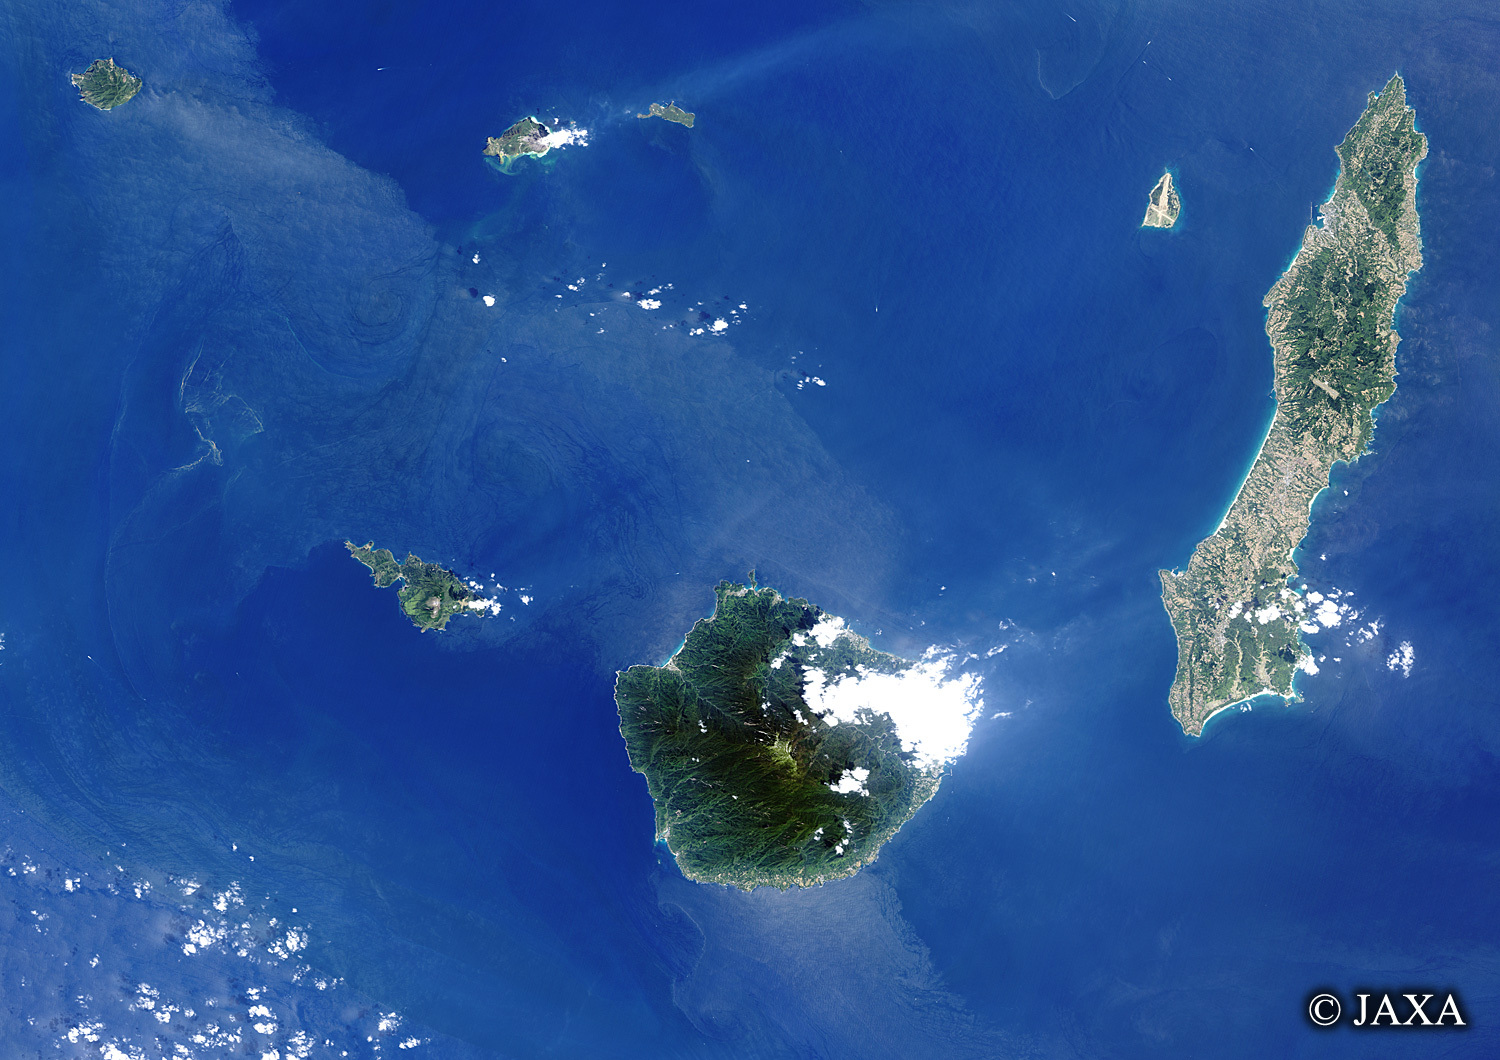 だいちから見た日本の都市 大隅諸島:衛星画像